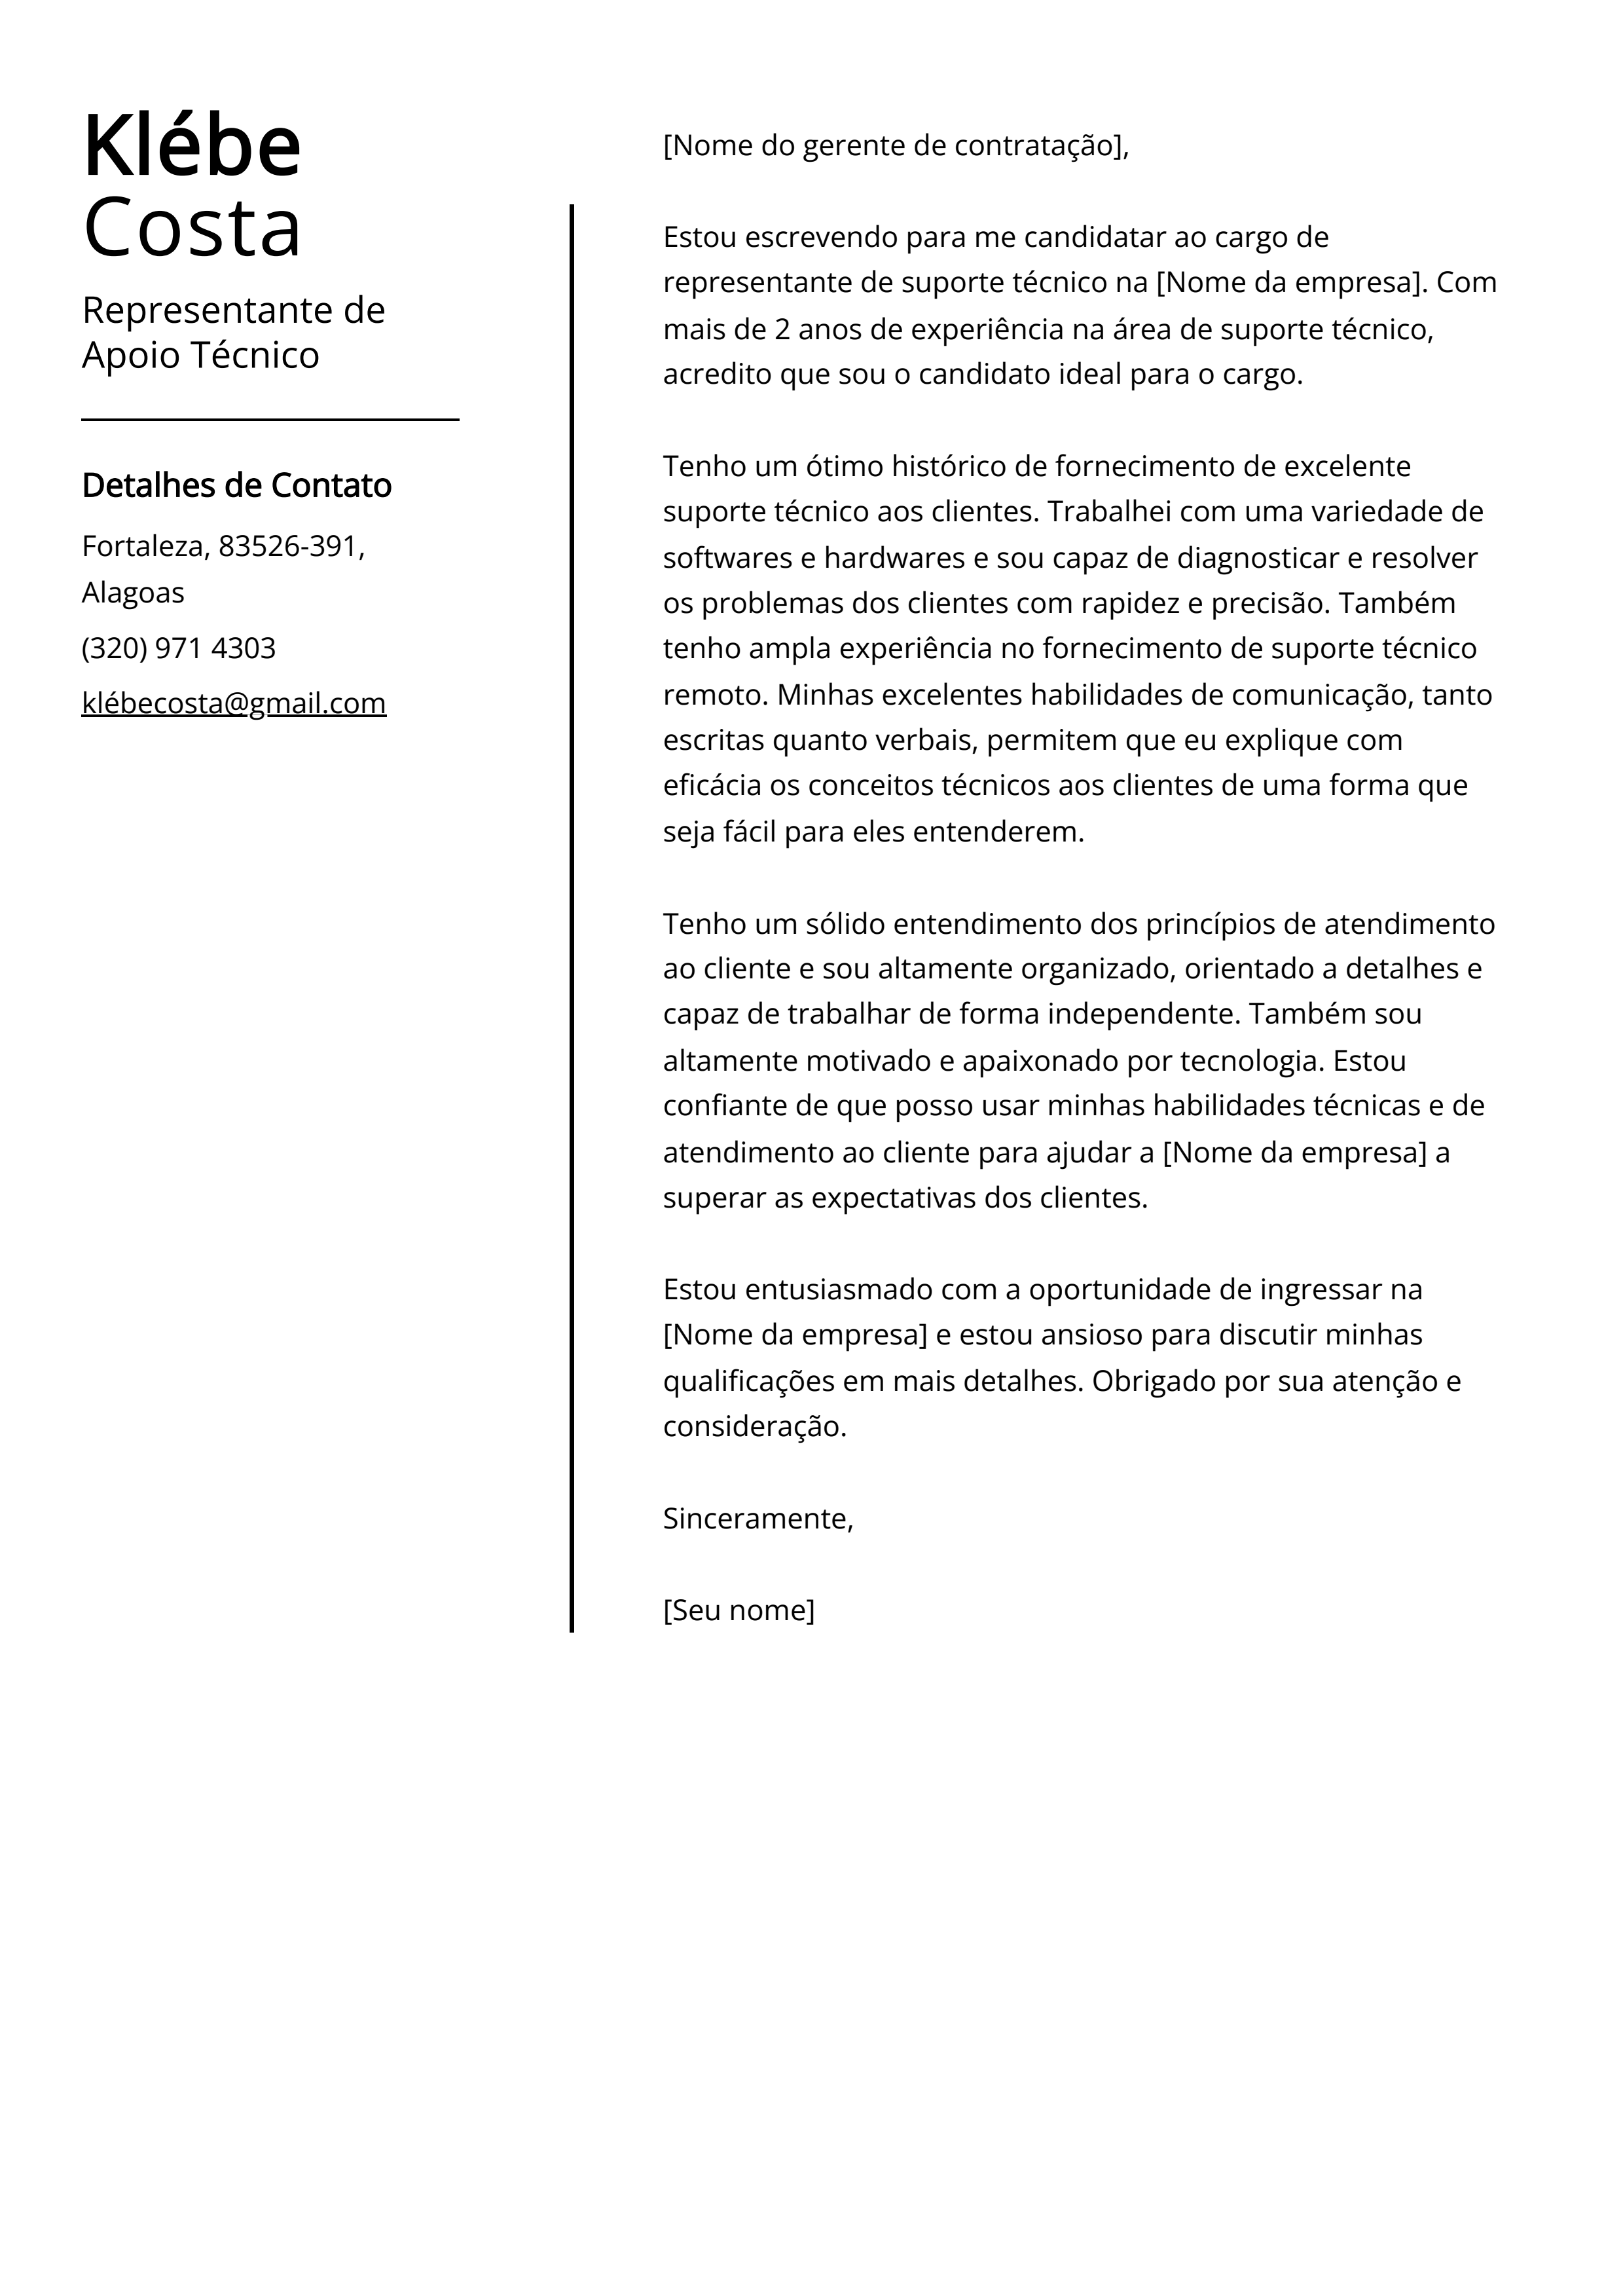 Exemplo de carta de apresentação de Representante de Apoio Técnico